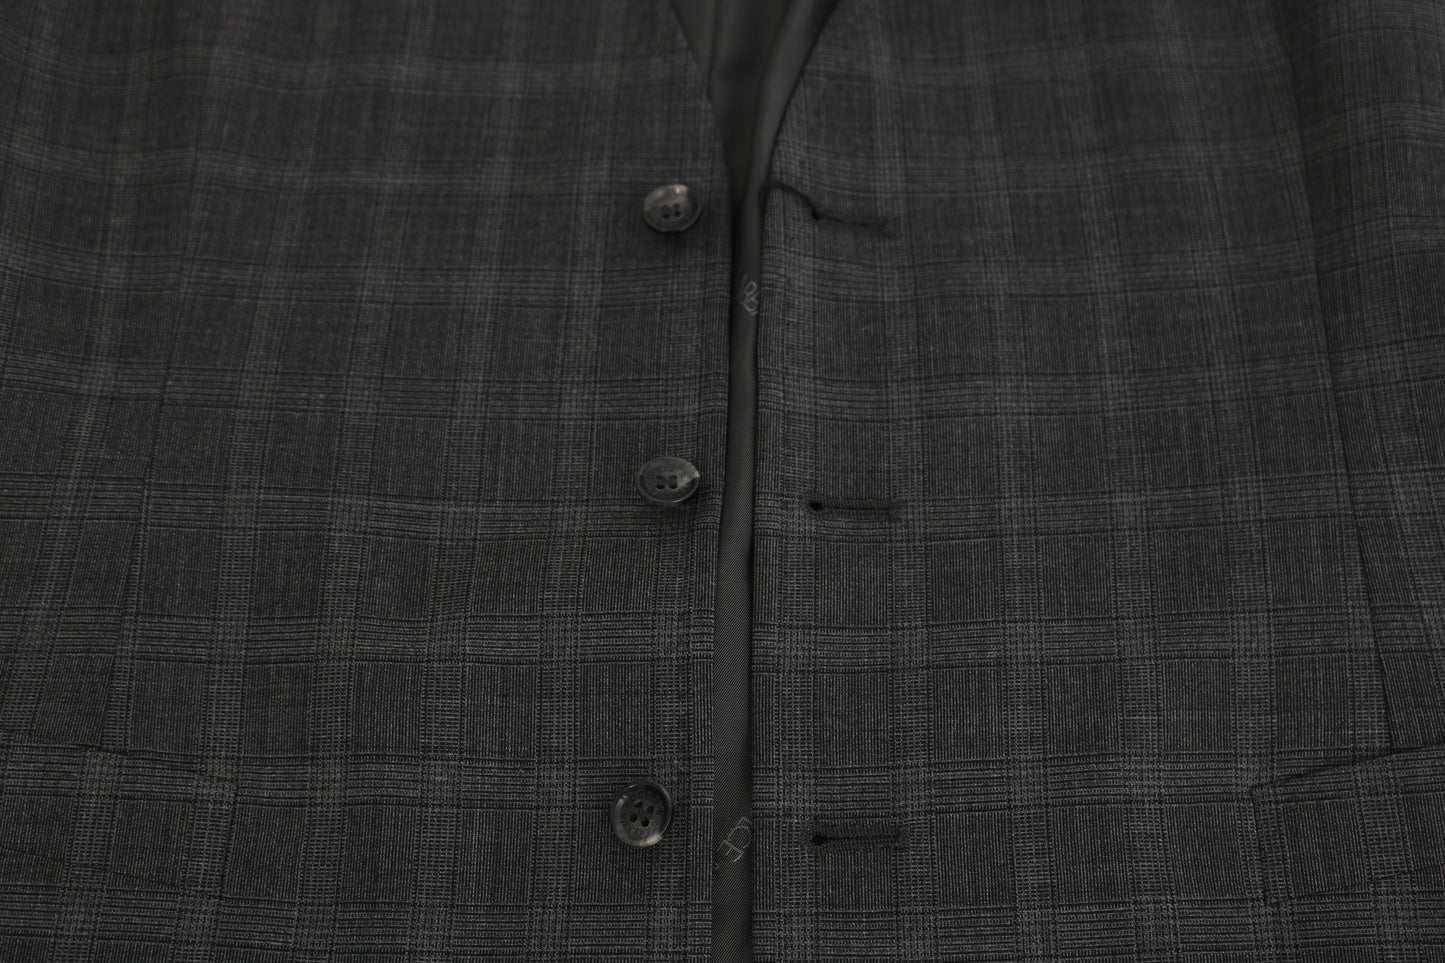 Elegant Checkered Wool Vest for the Urbane Man